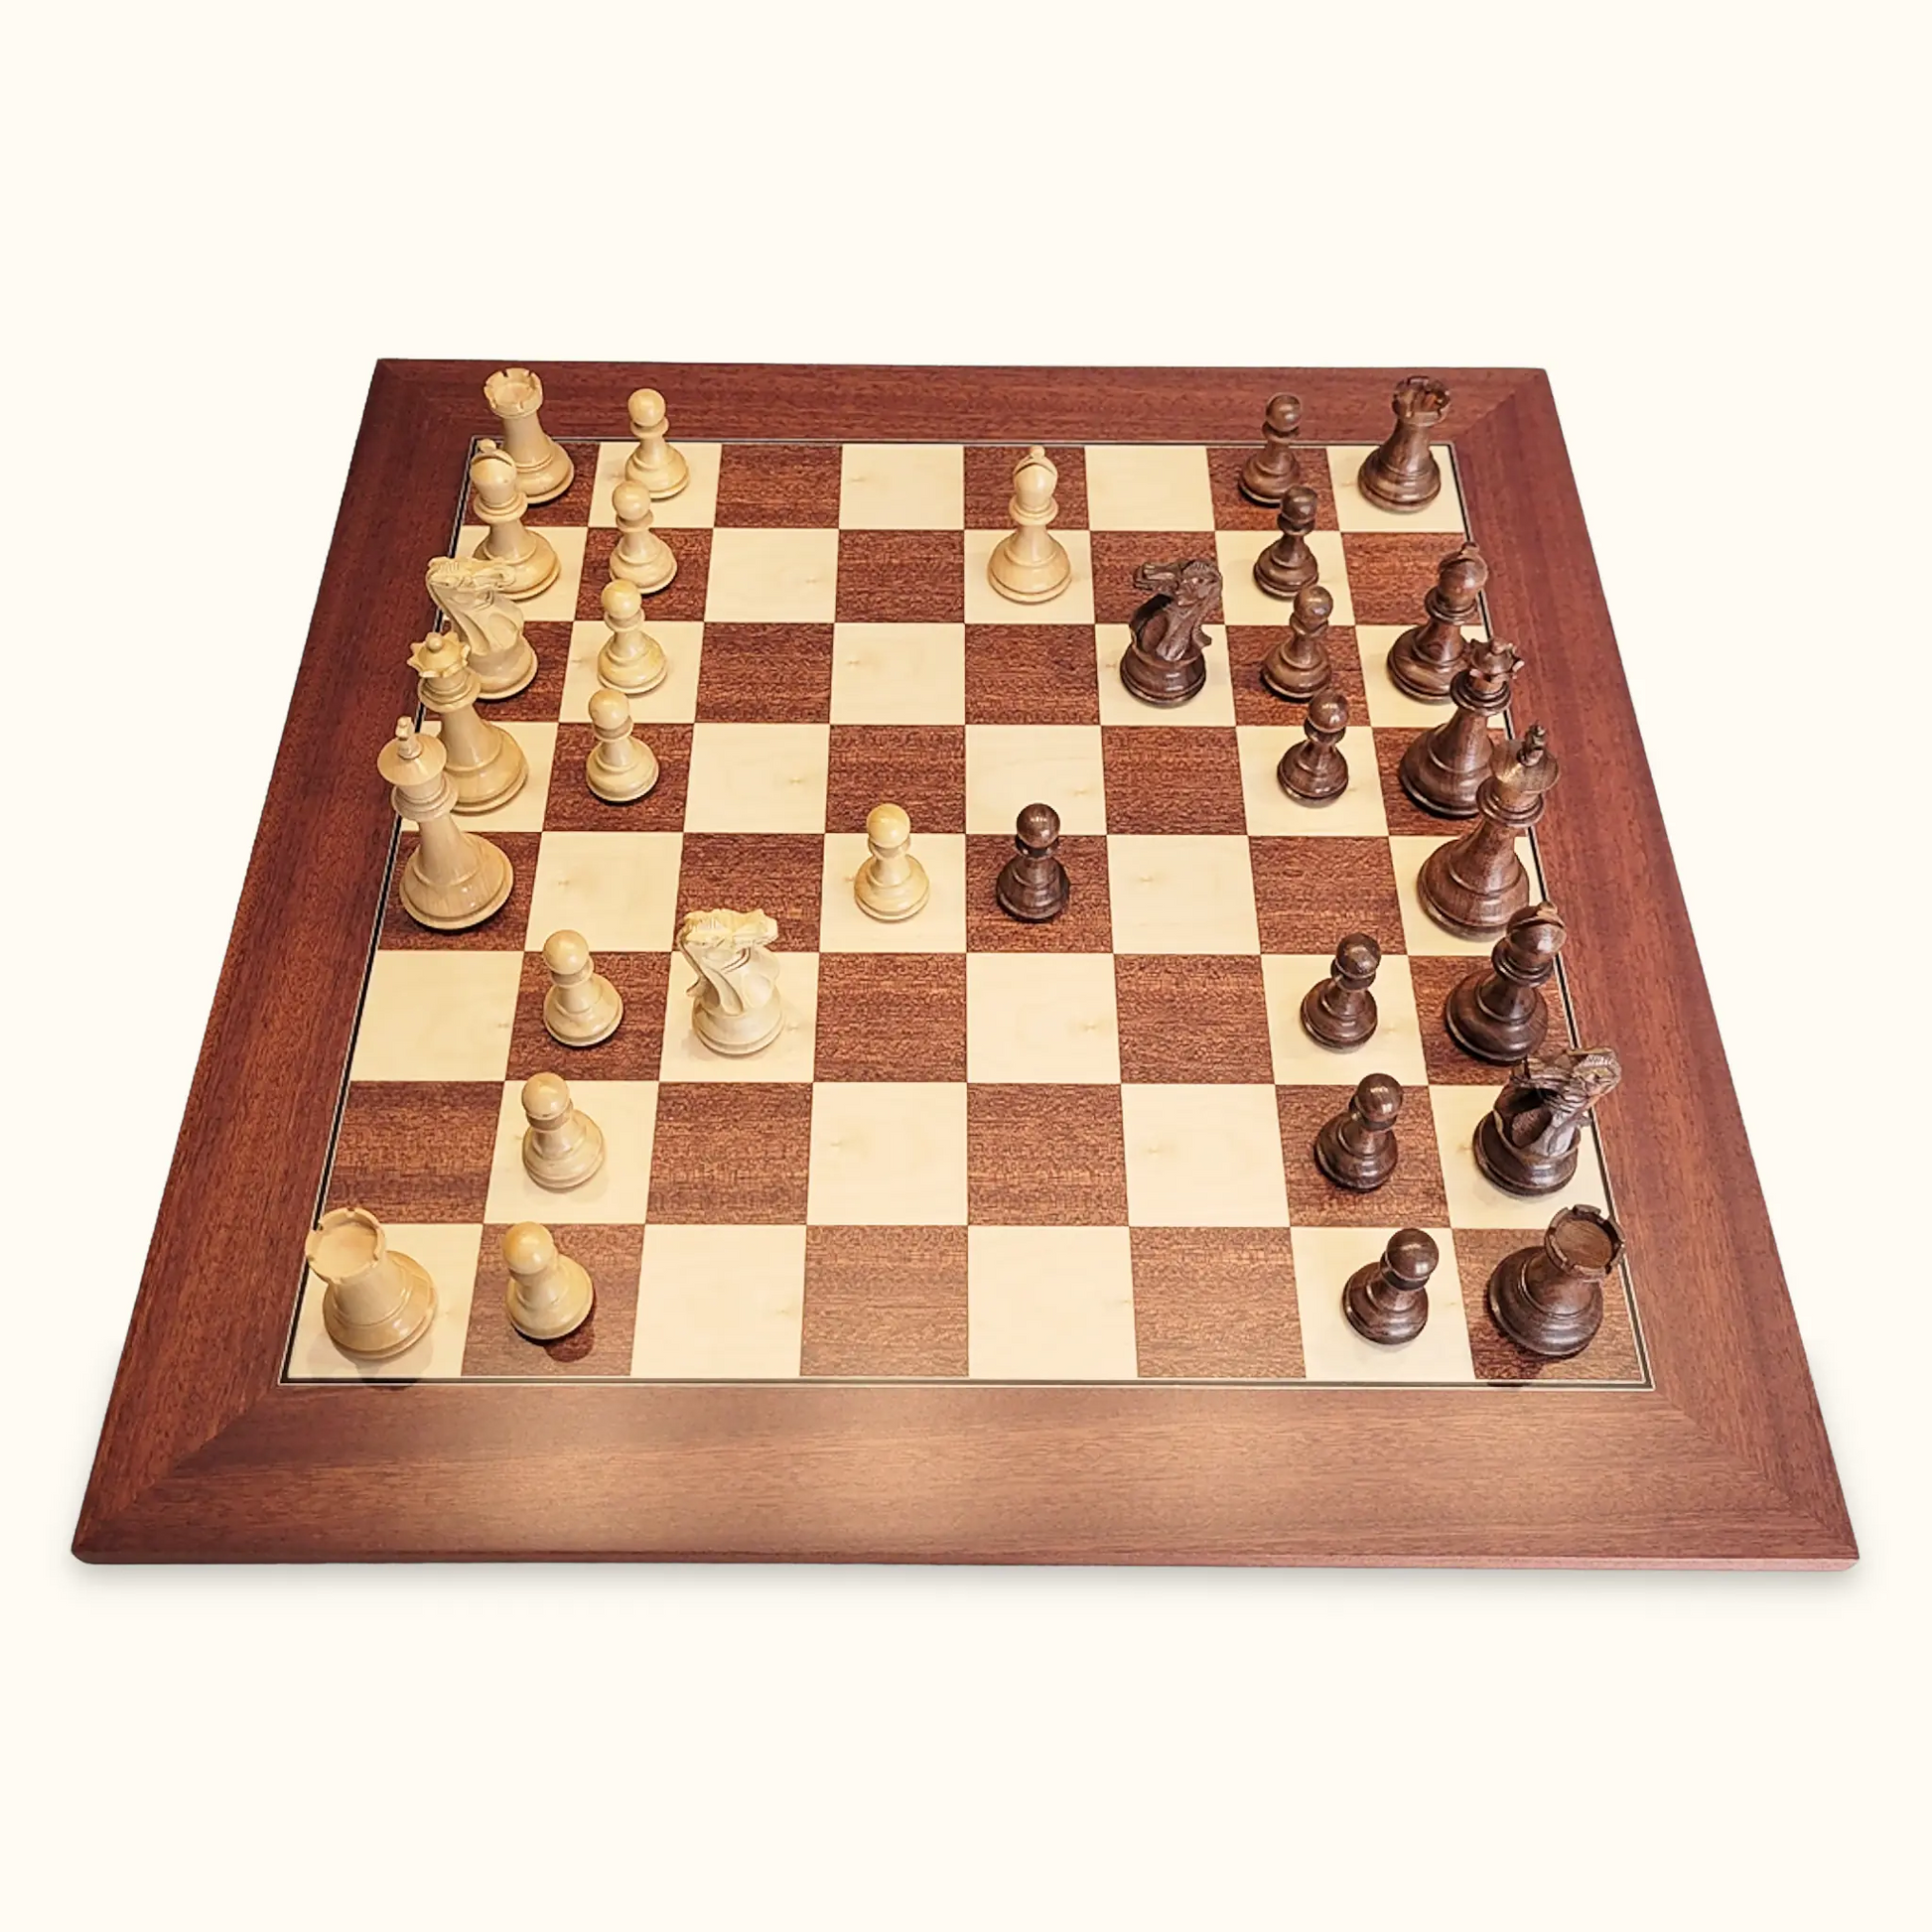 Chess pieces stallion knight acacia on mahogany chessboard side